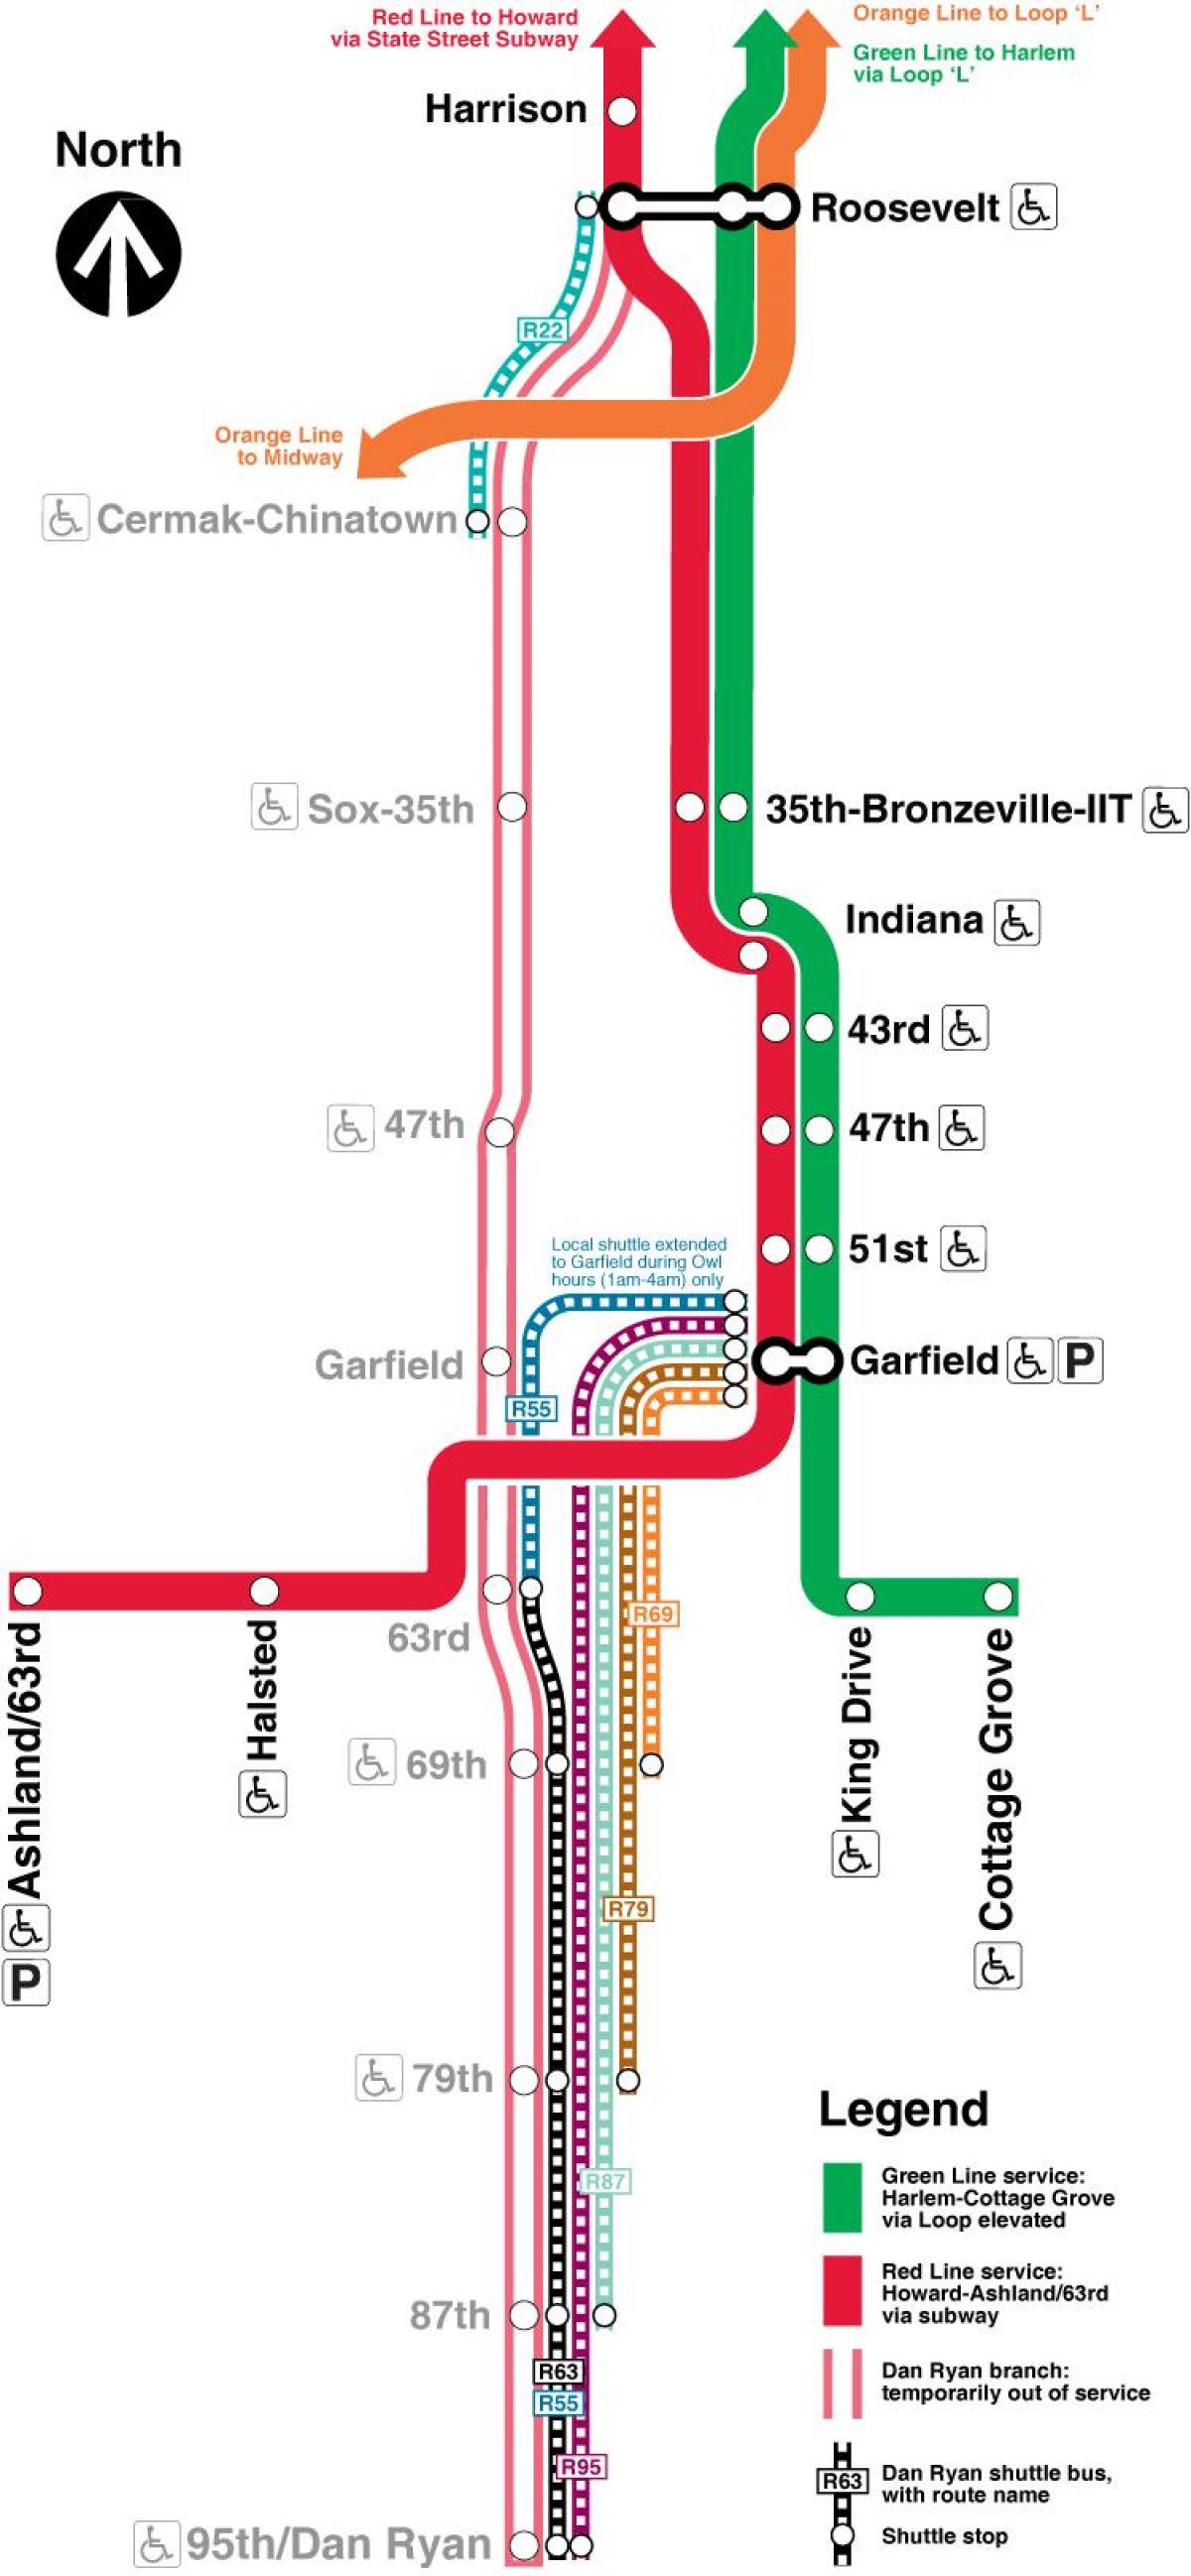 Чикаго карта метро красная линия